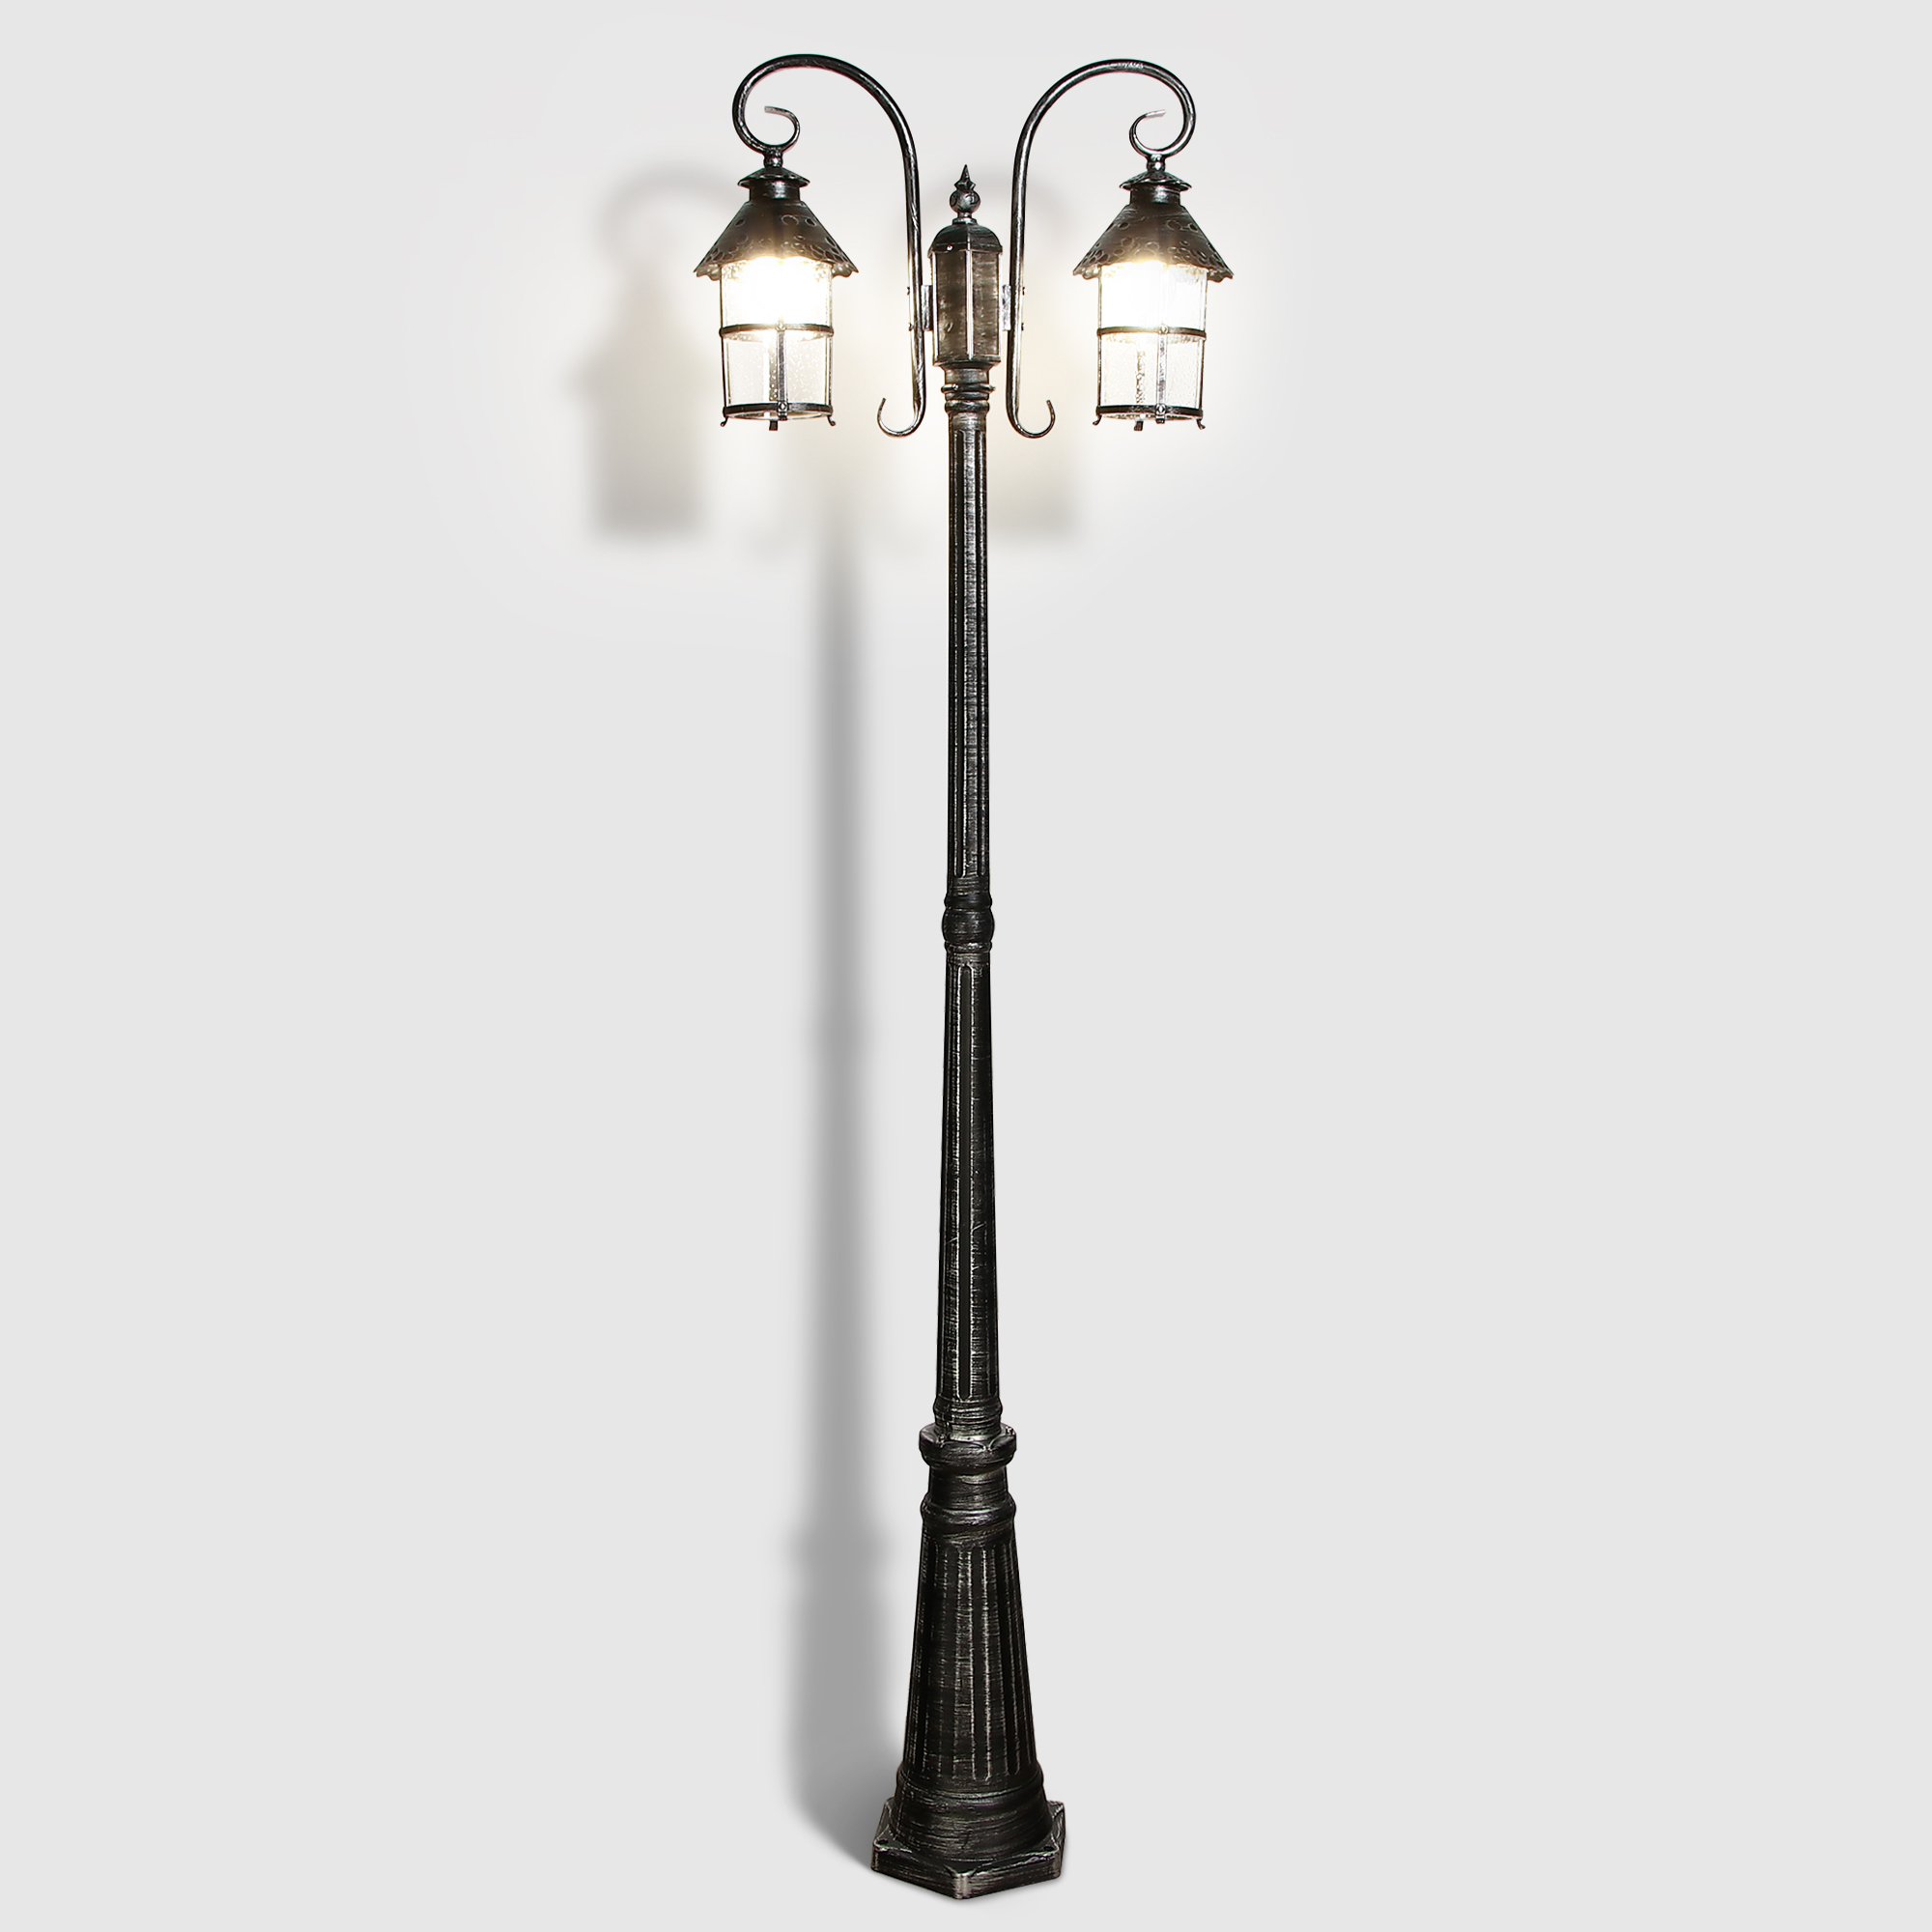 Светильник садовый Amber Lamp 9732-POLE 10 напольный IP44 E27 100Вт, черное серебро, цвет черное серебро, прозрачный - фото 2